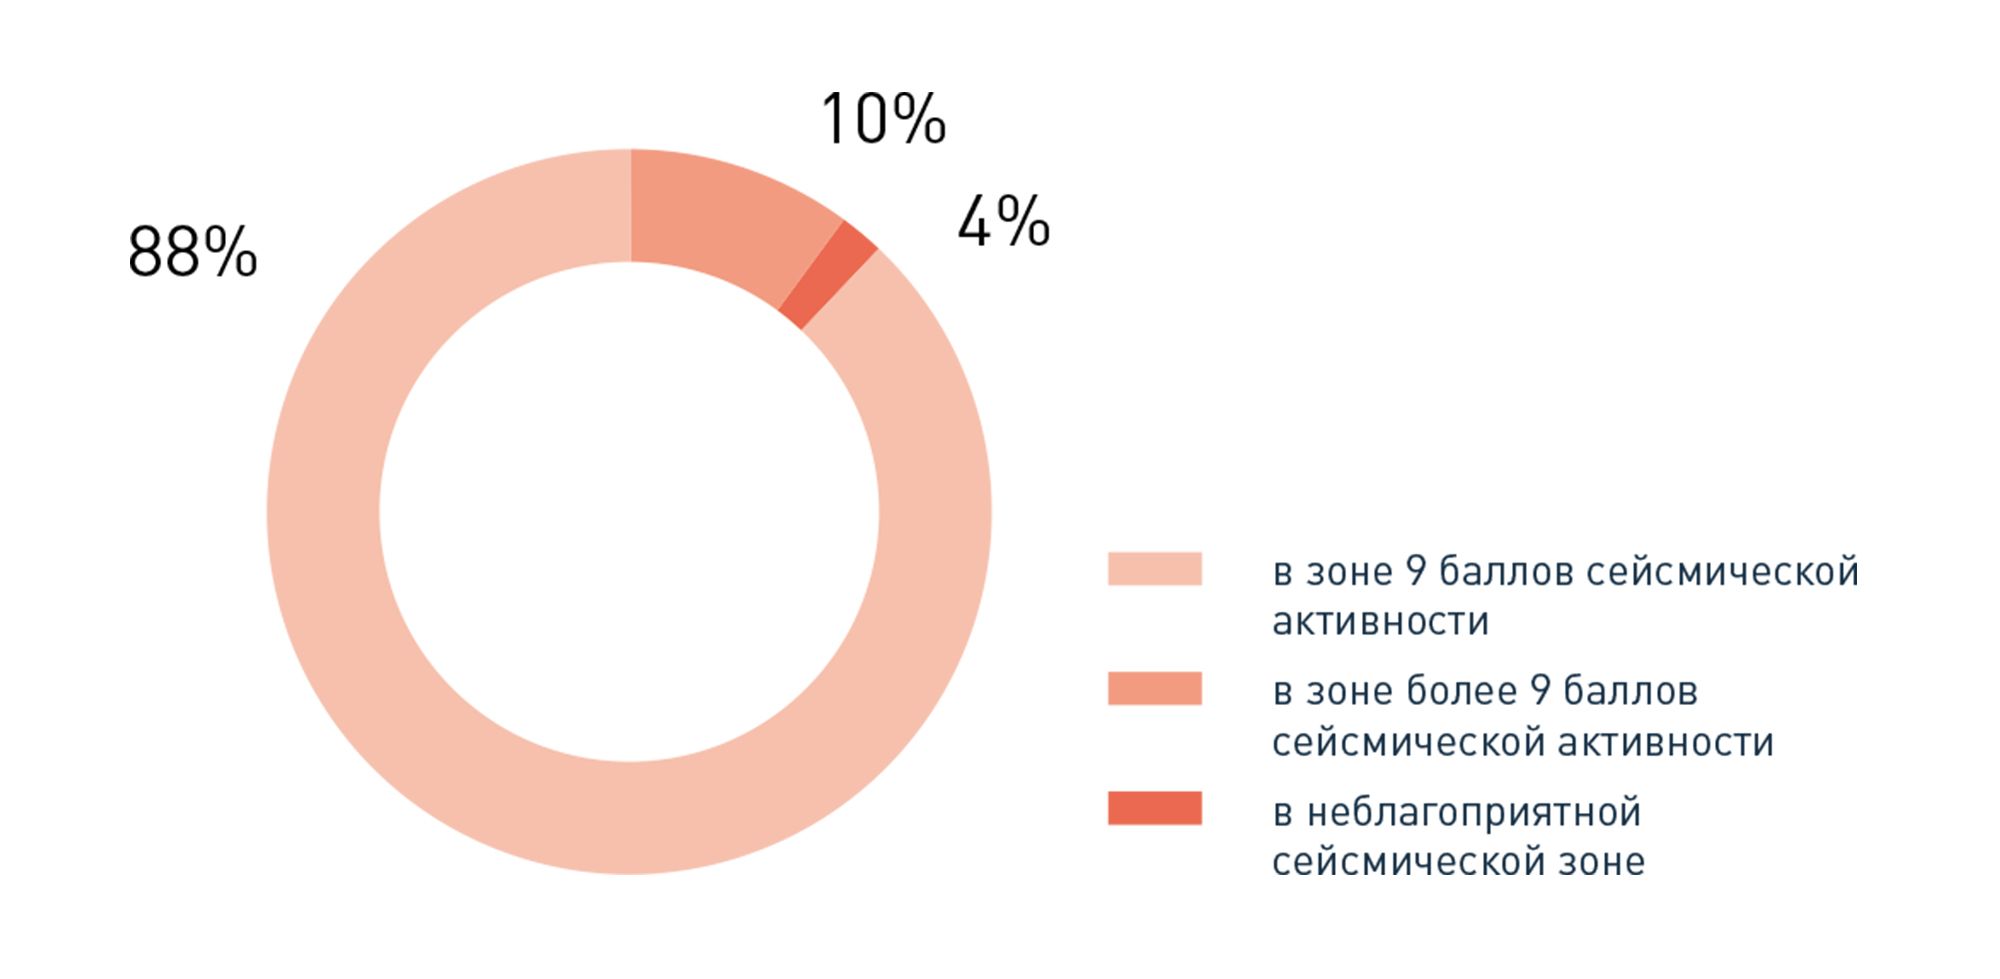 Распределение районов с различной сейсмической активностью в Байкальске по площади, %